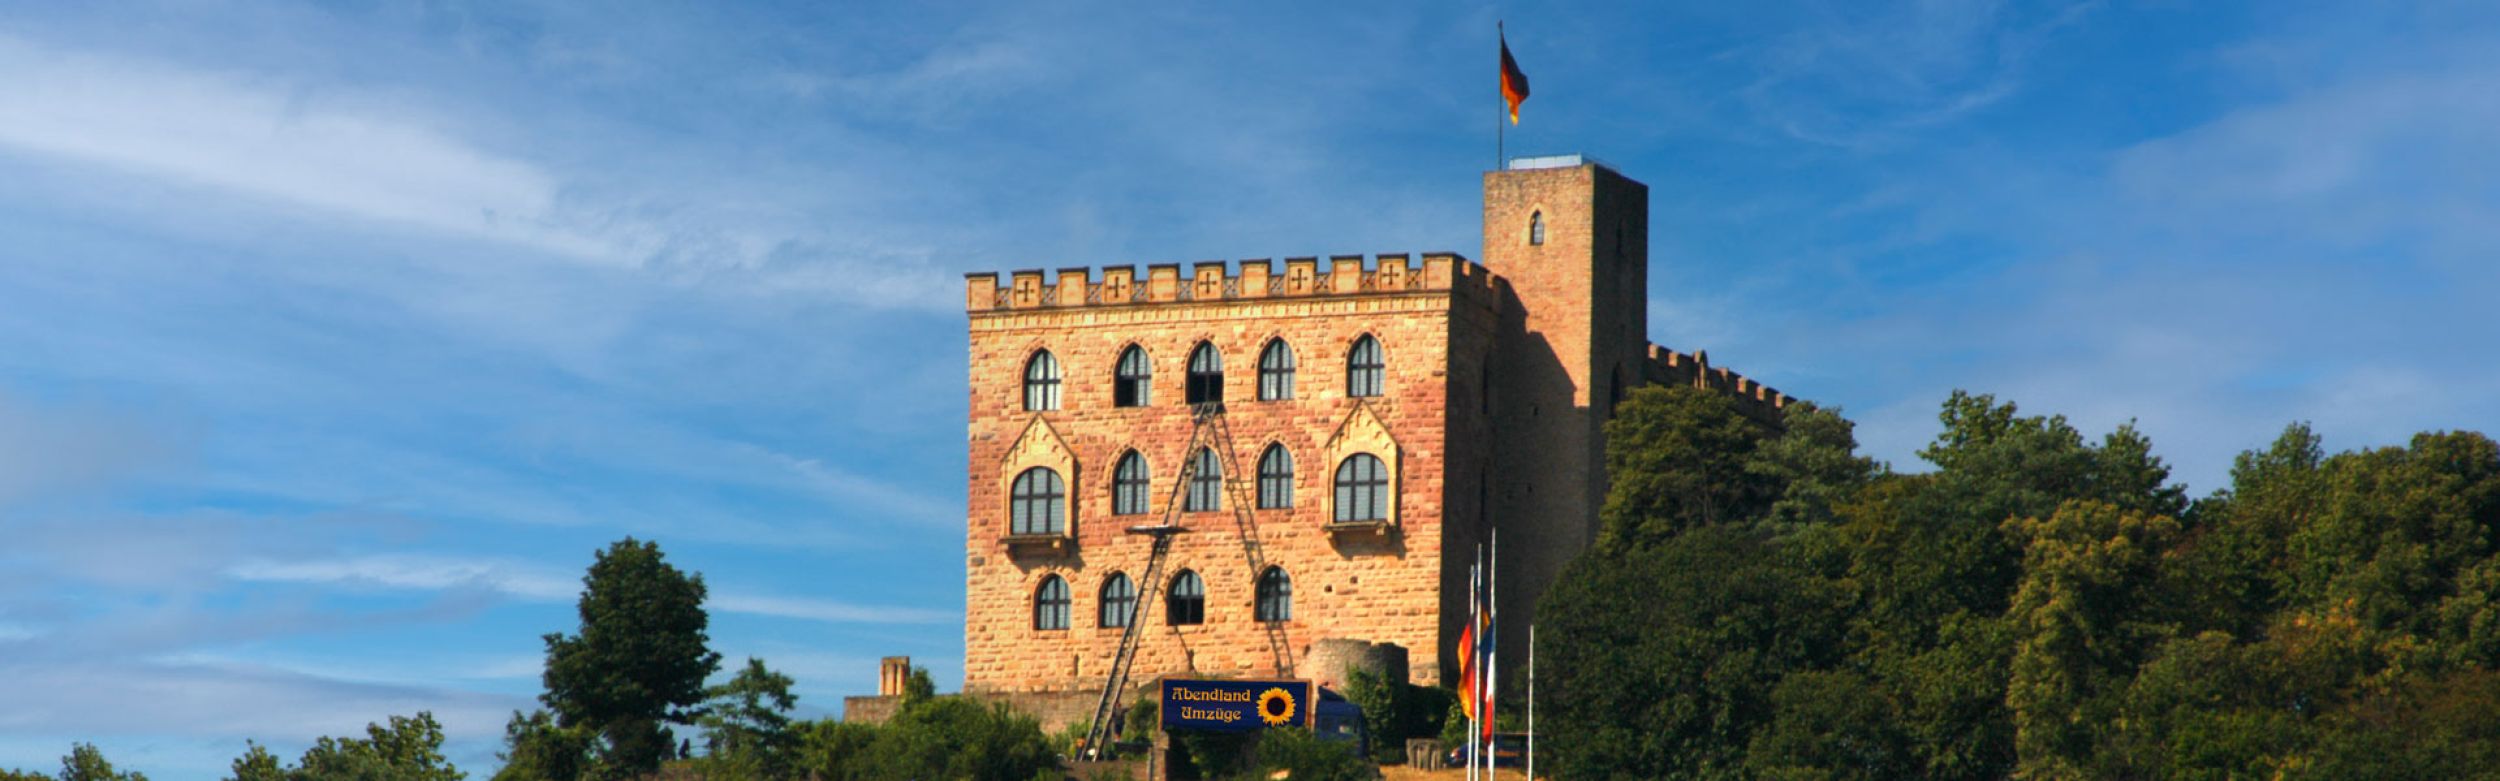 Umzug Hambacher Schloss Neustadt an der Weinstraße